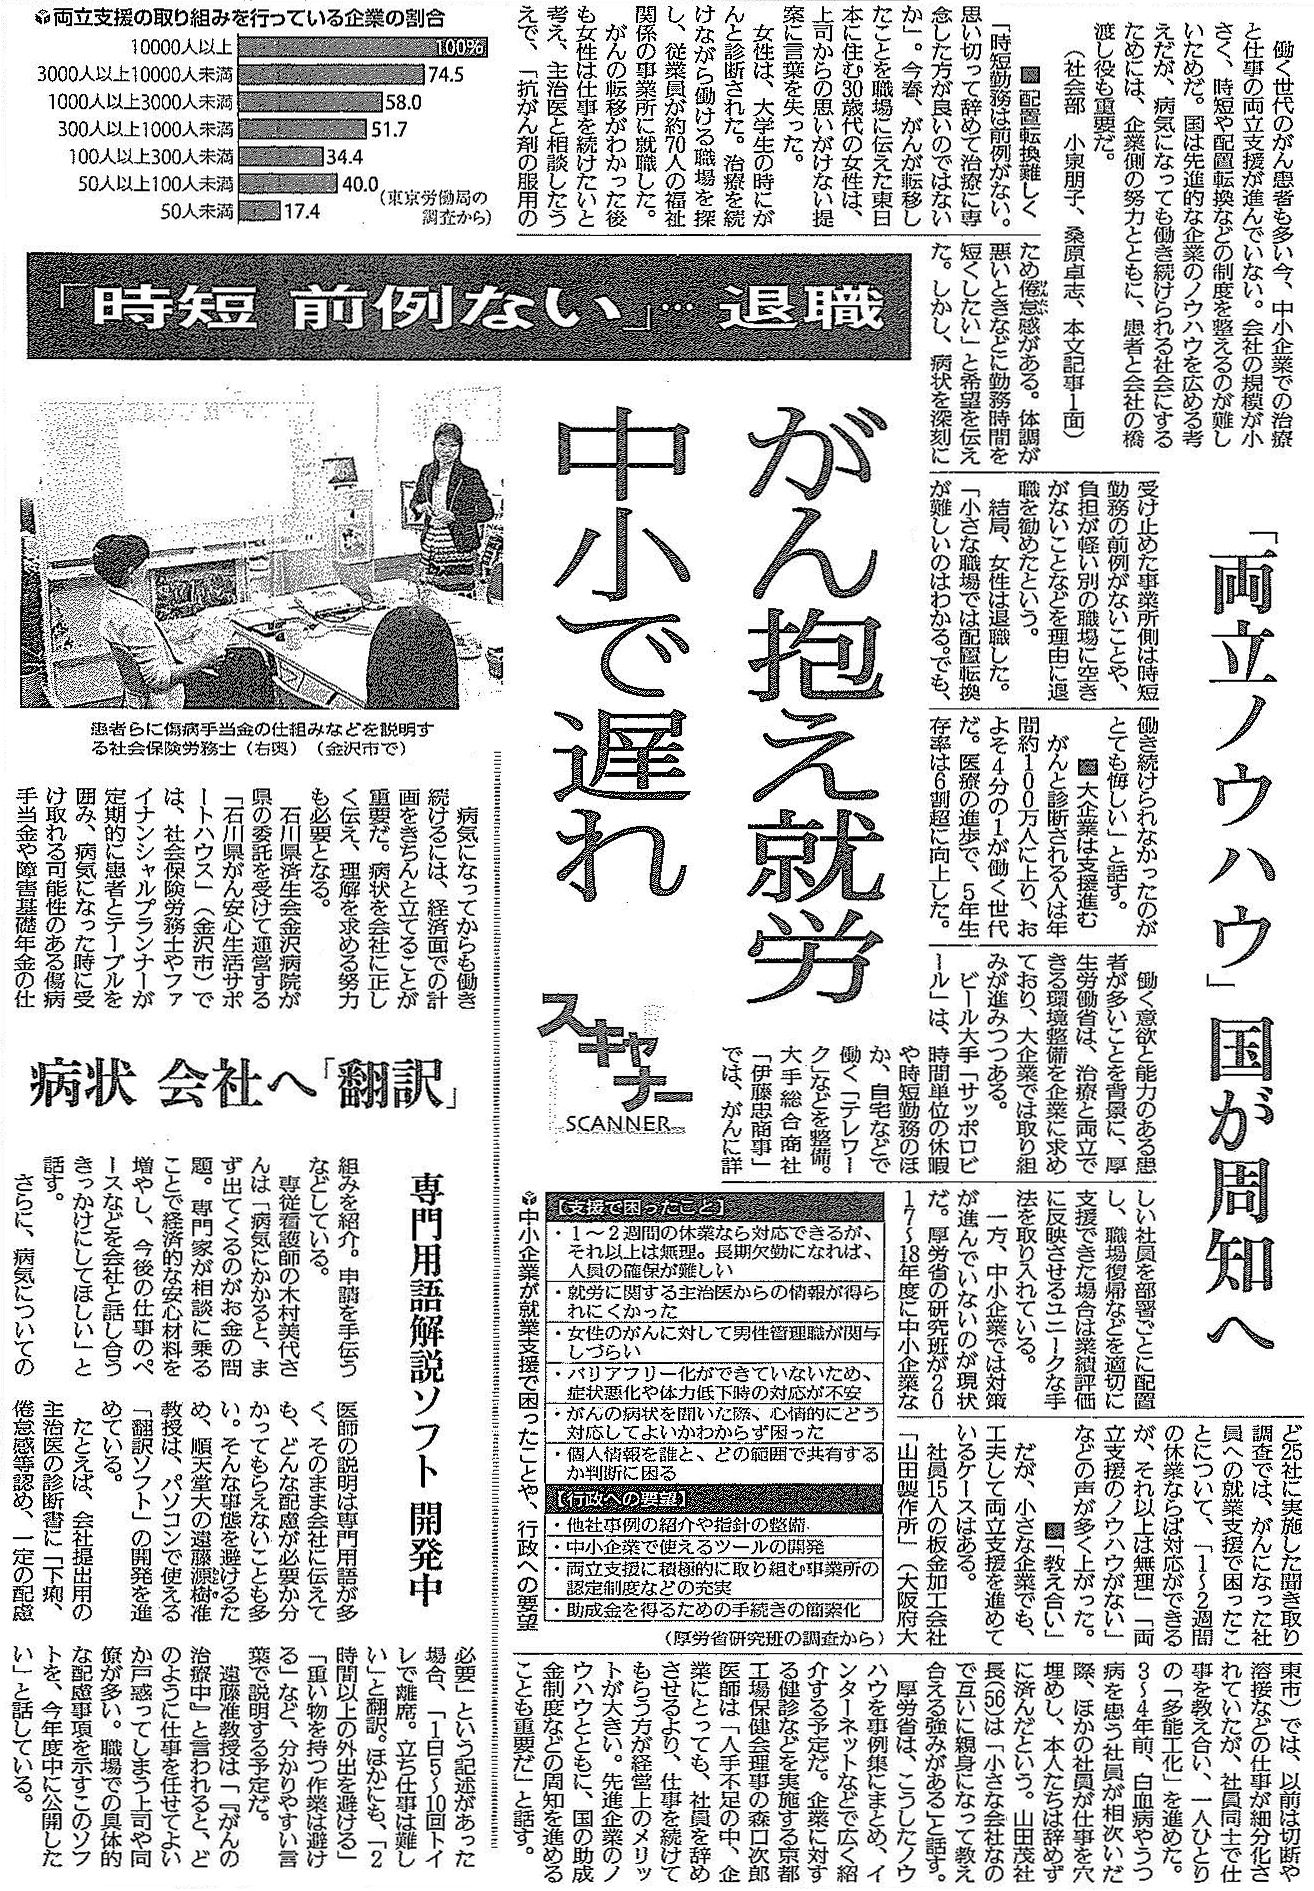 読売新聞 2019年9月4日掲載